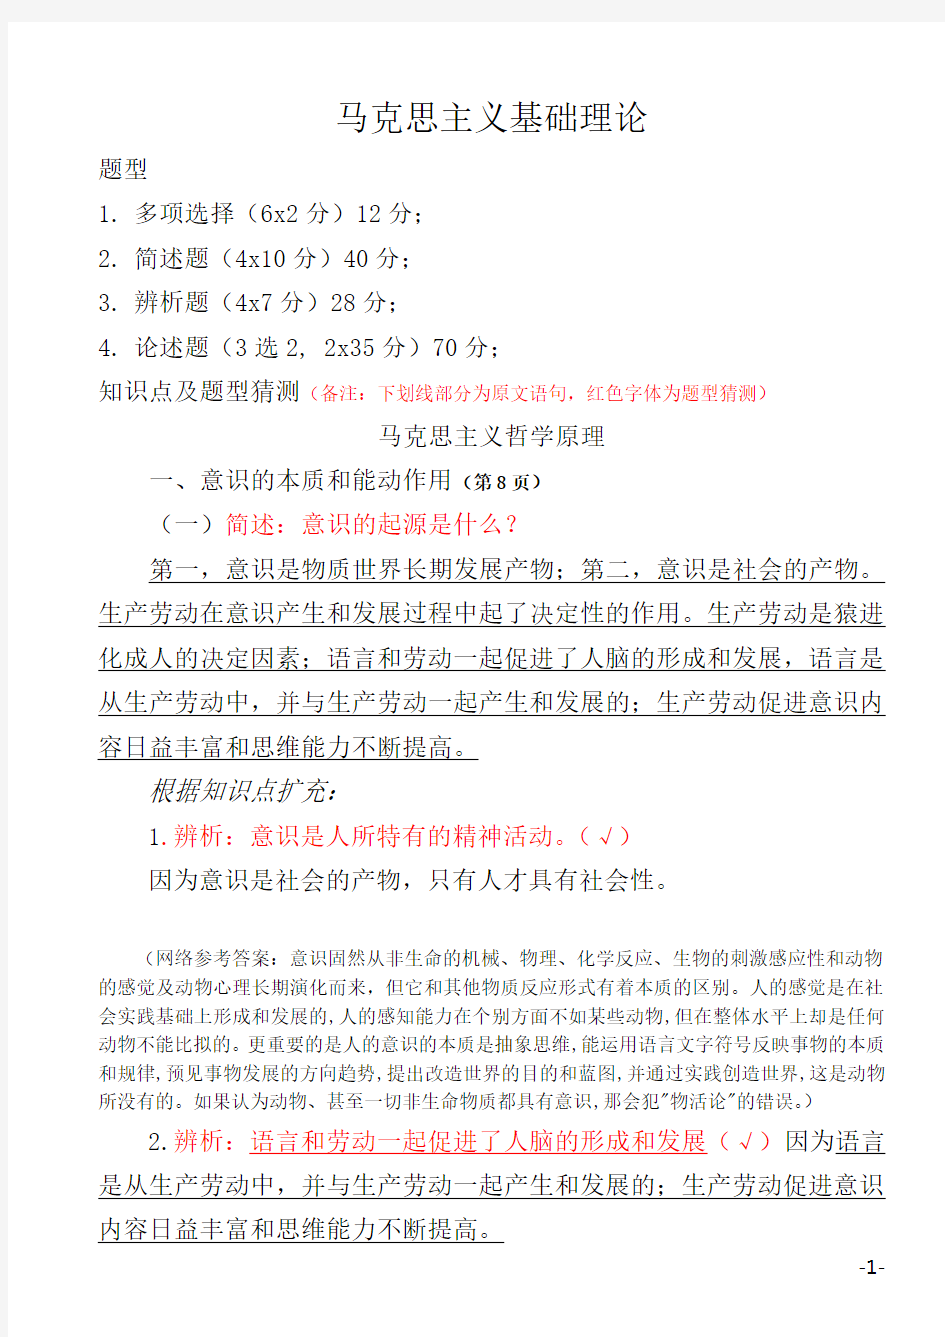 四川省委党校2015年在职研究生入学考试复习资料-马克思主义哲学原理(全)